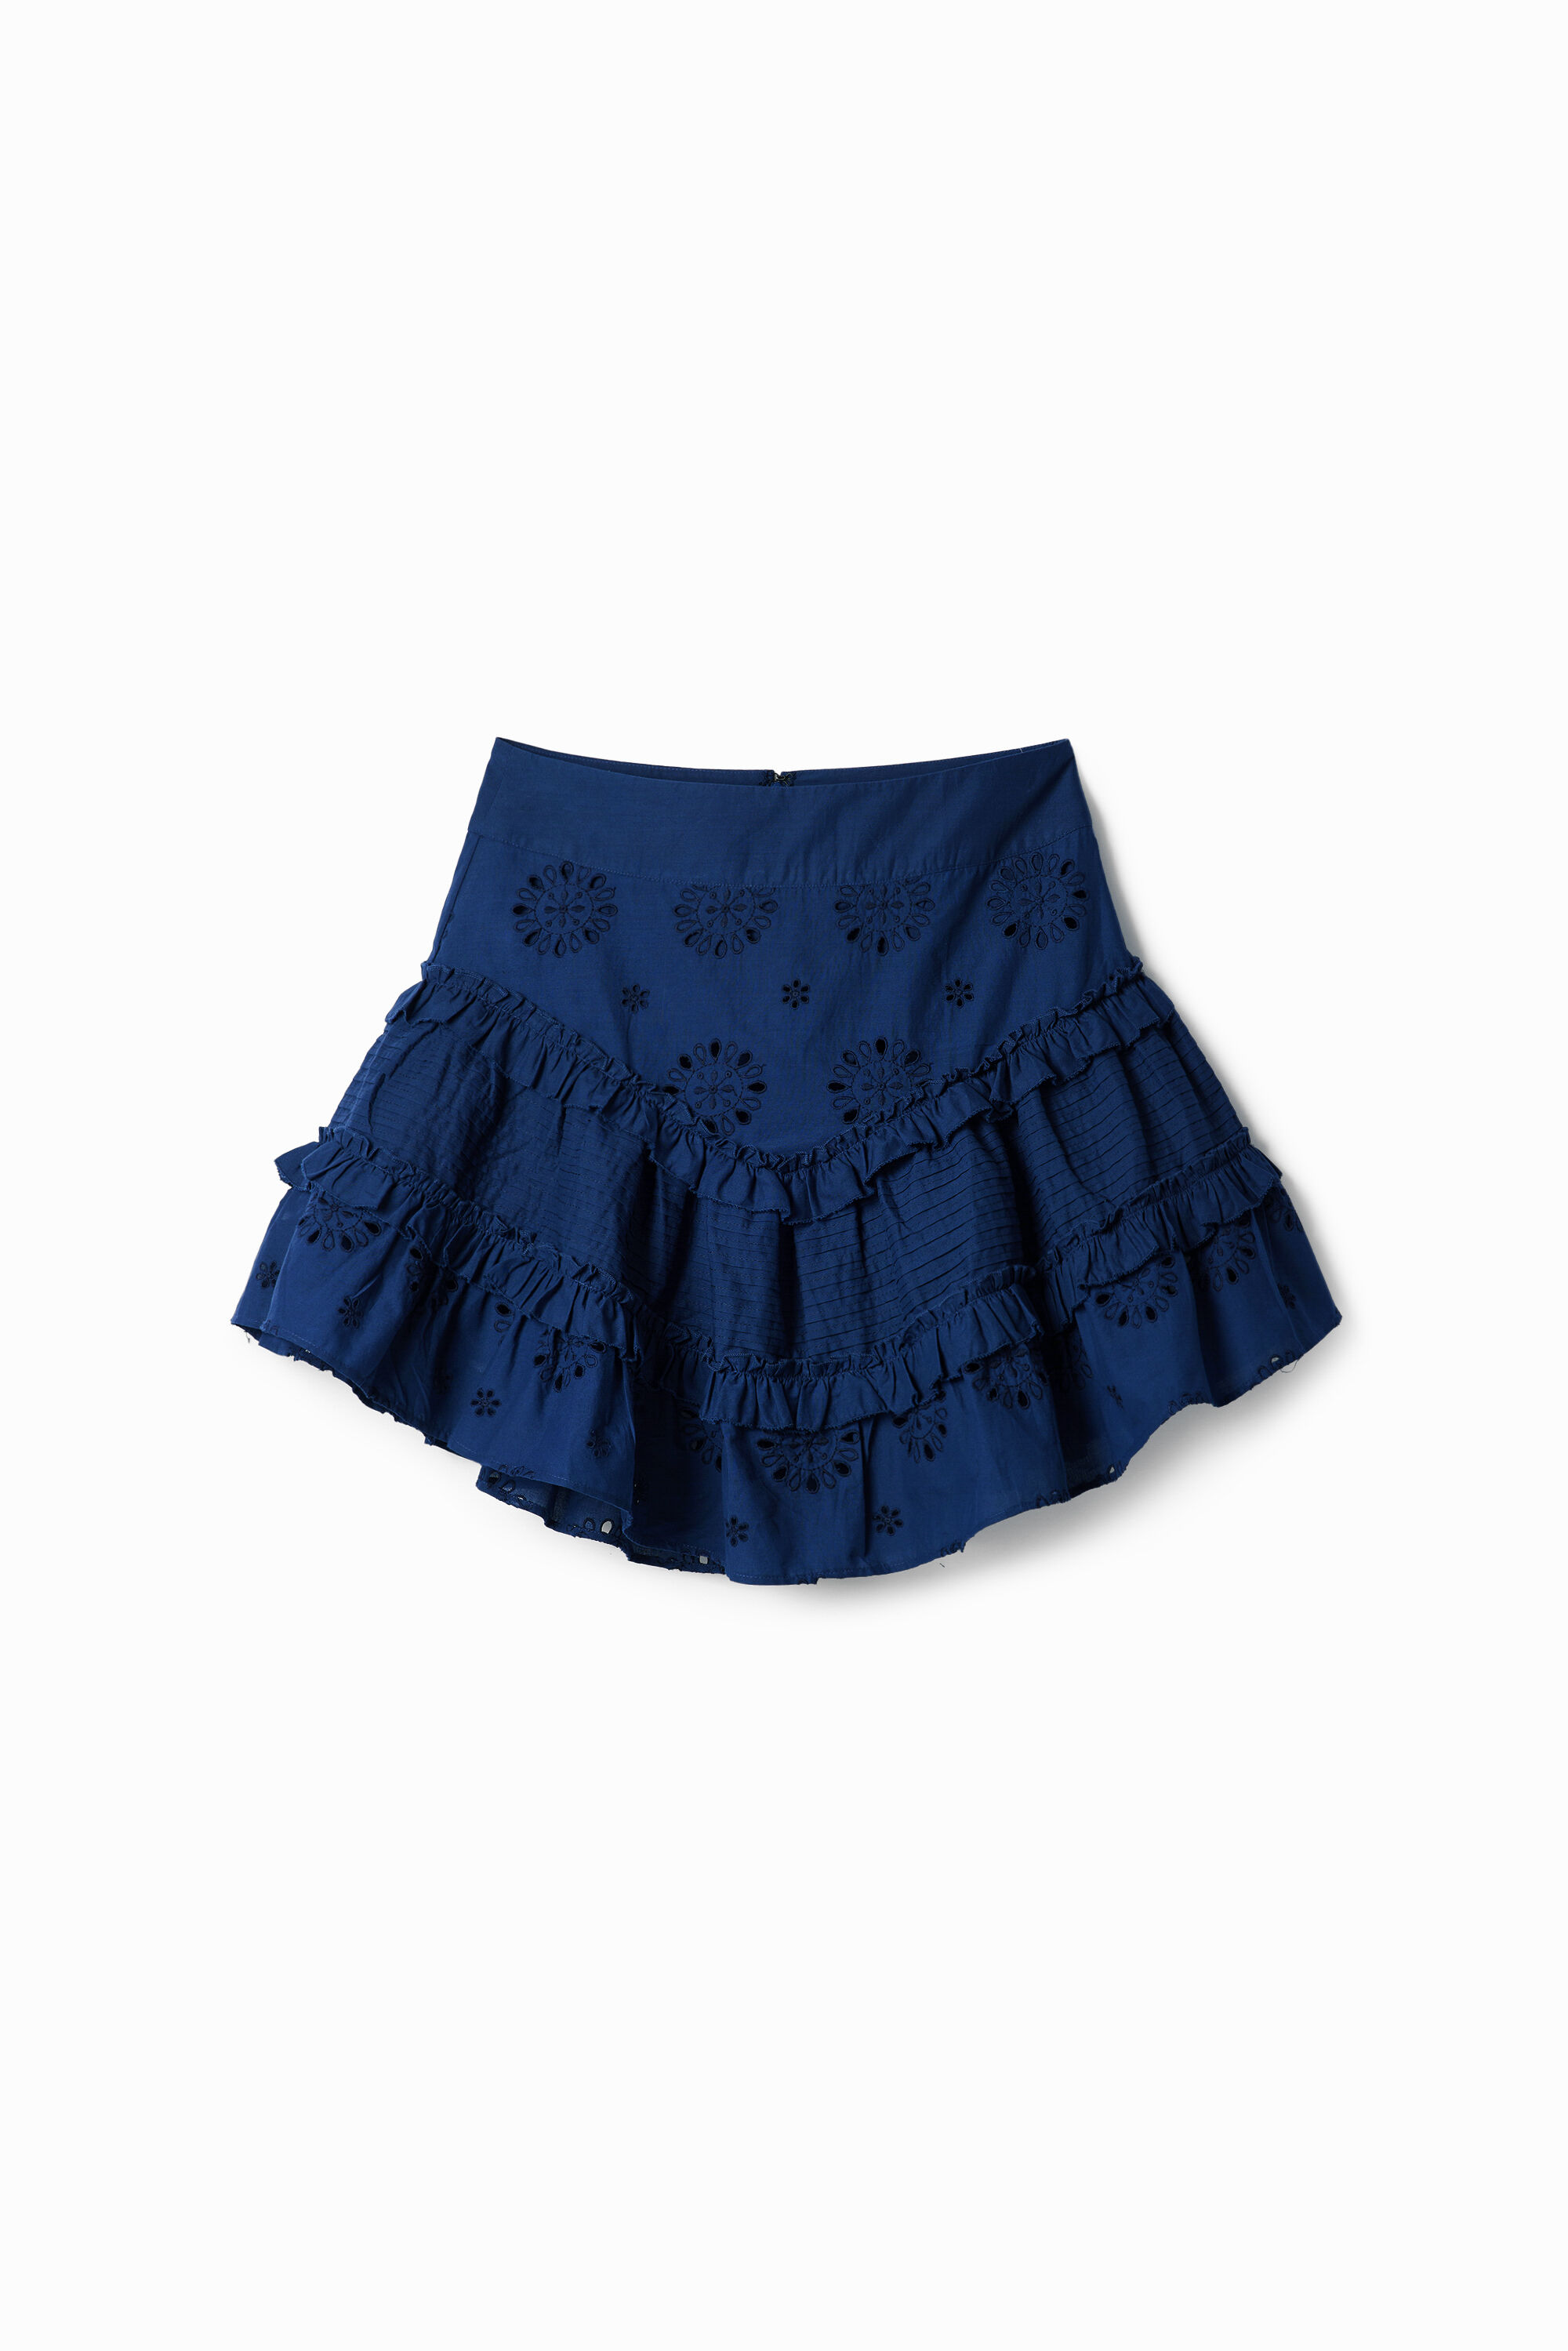 Desigual Swiss embroidery ruffle miniskirt